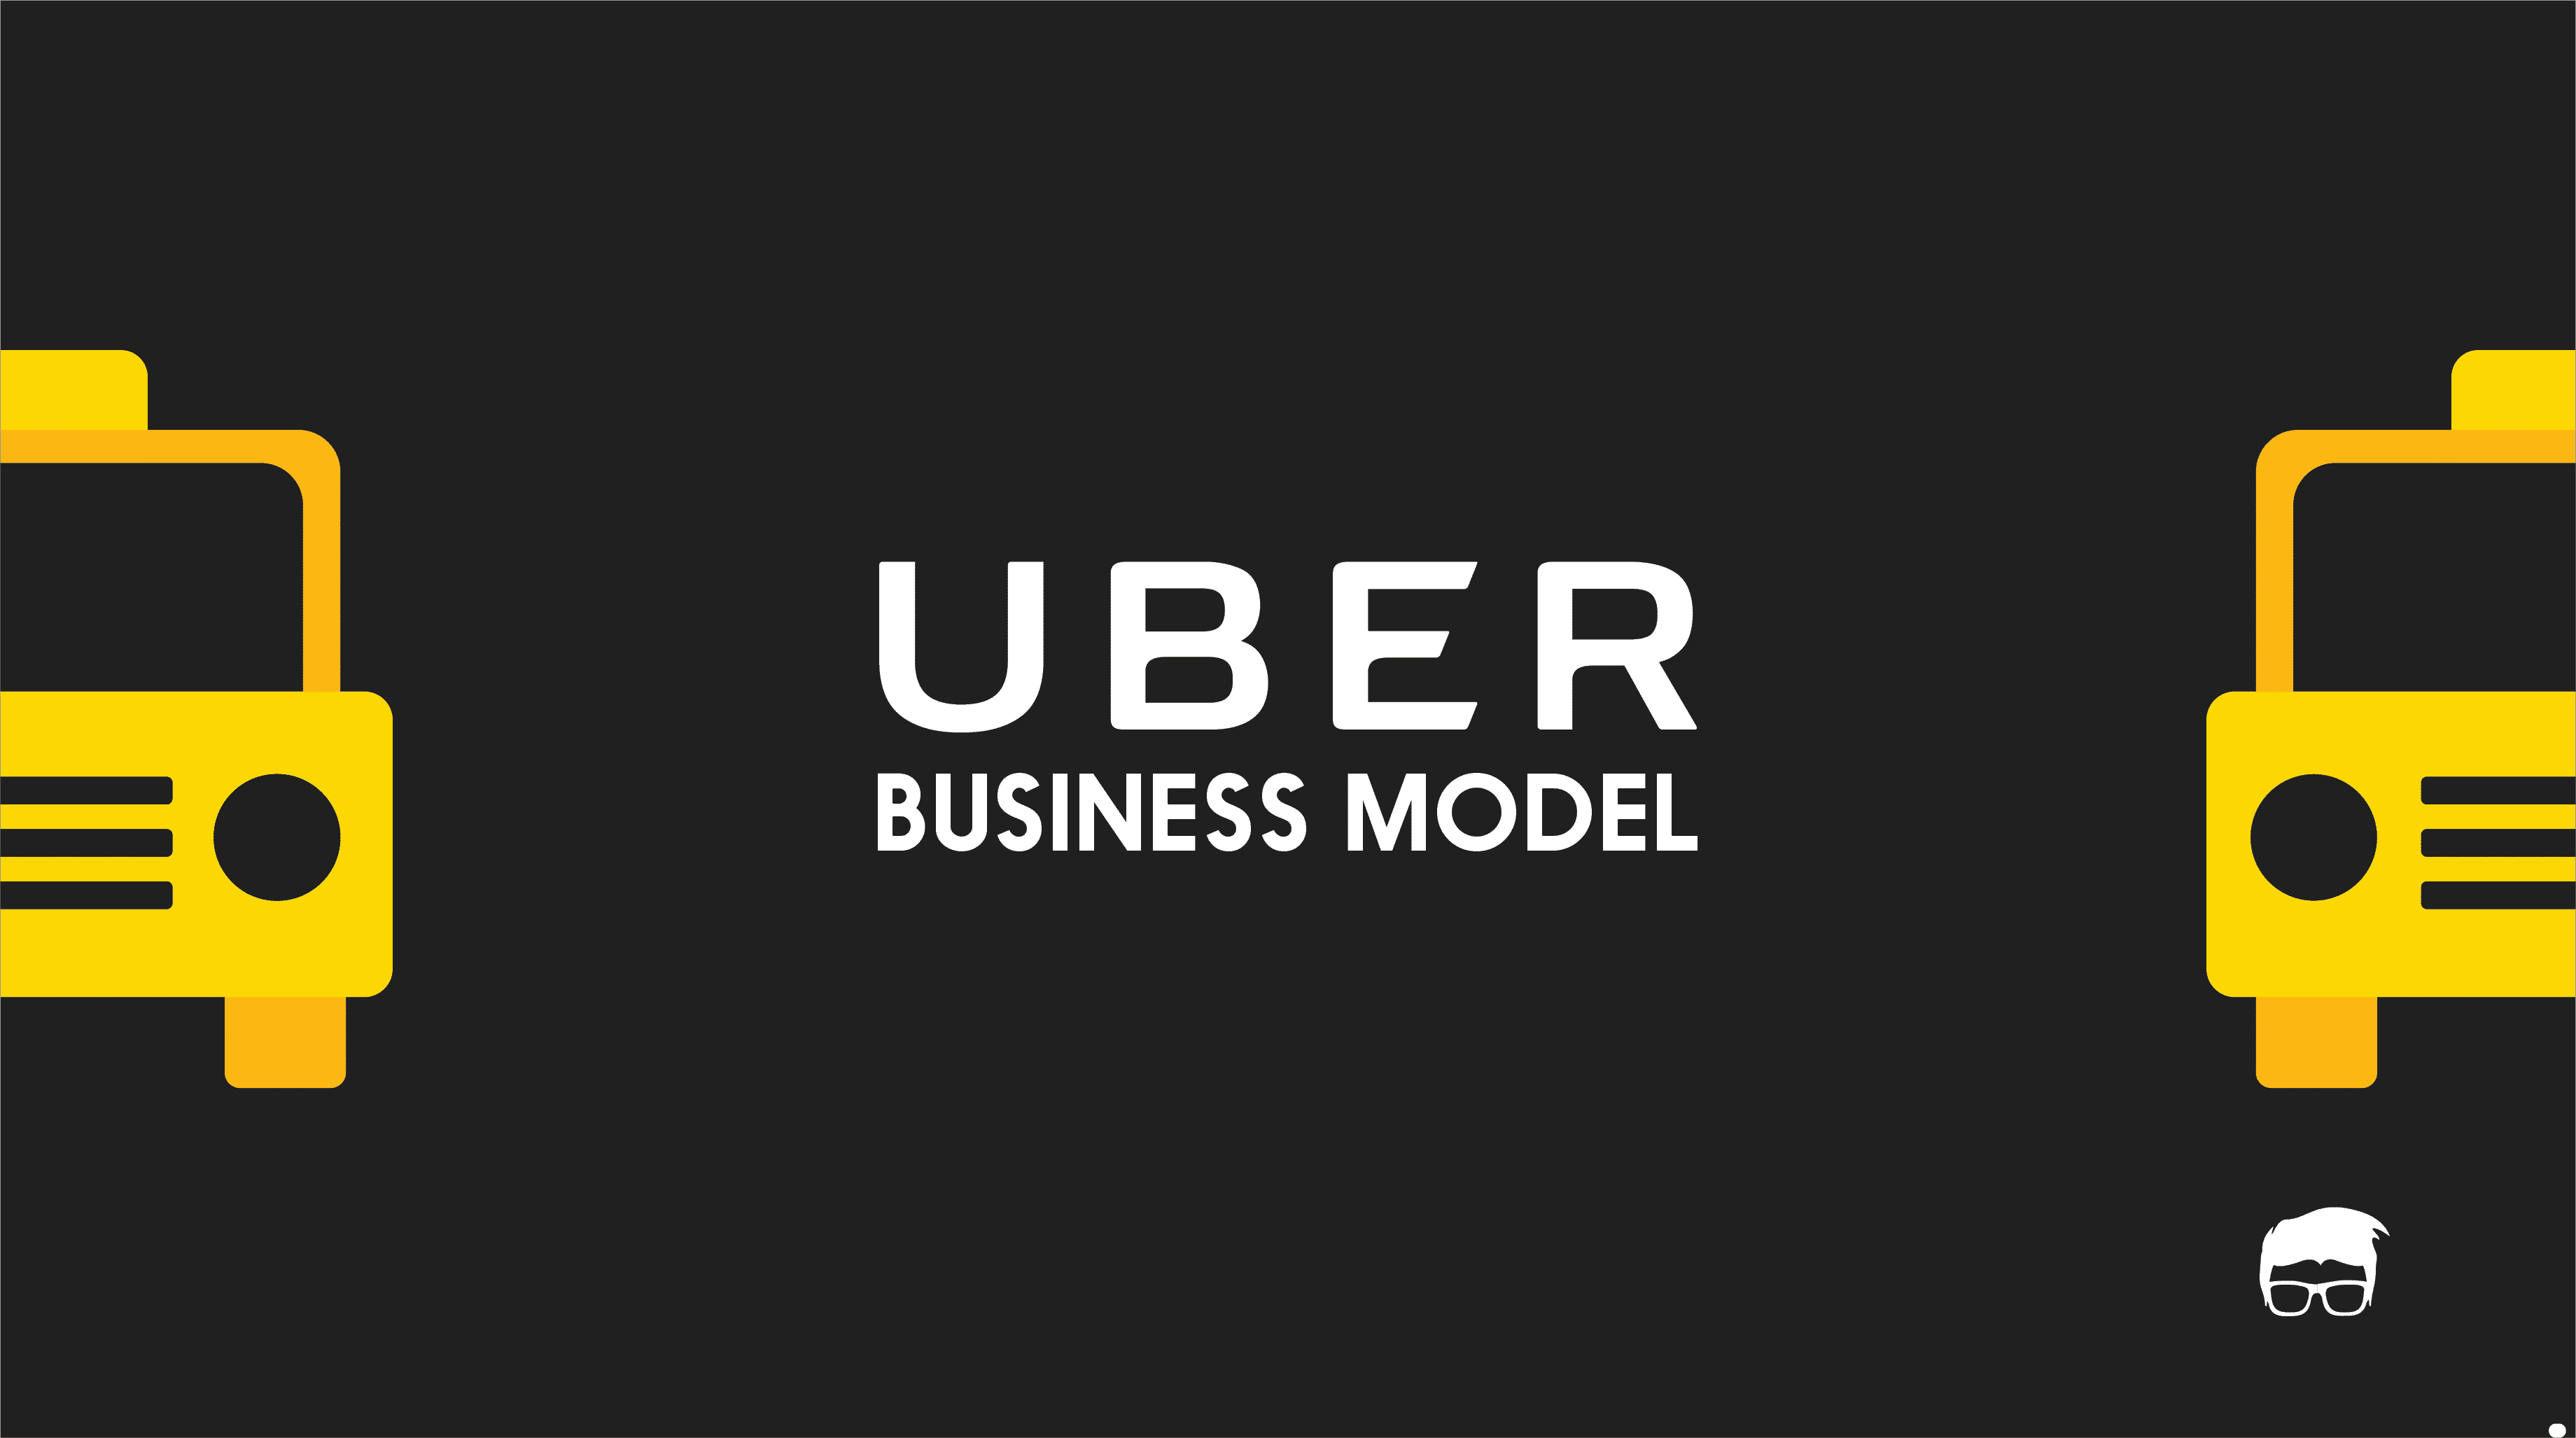 Uber Business Model | How does Uber Make Money?